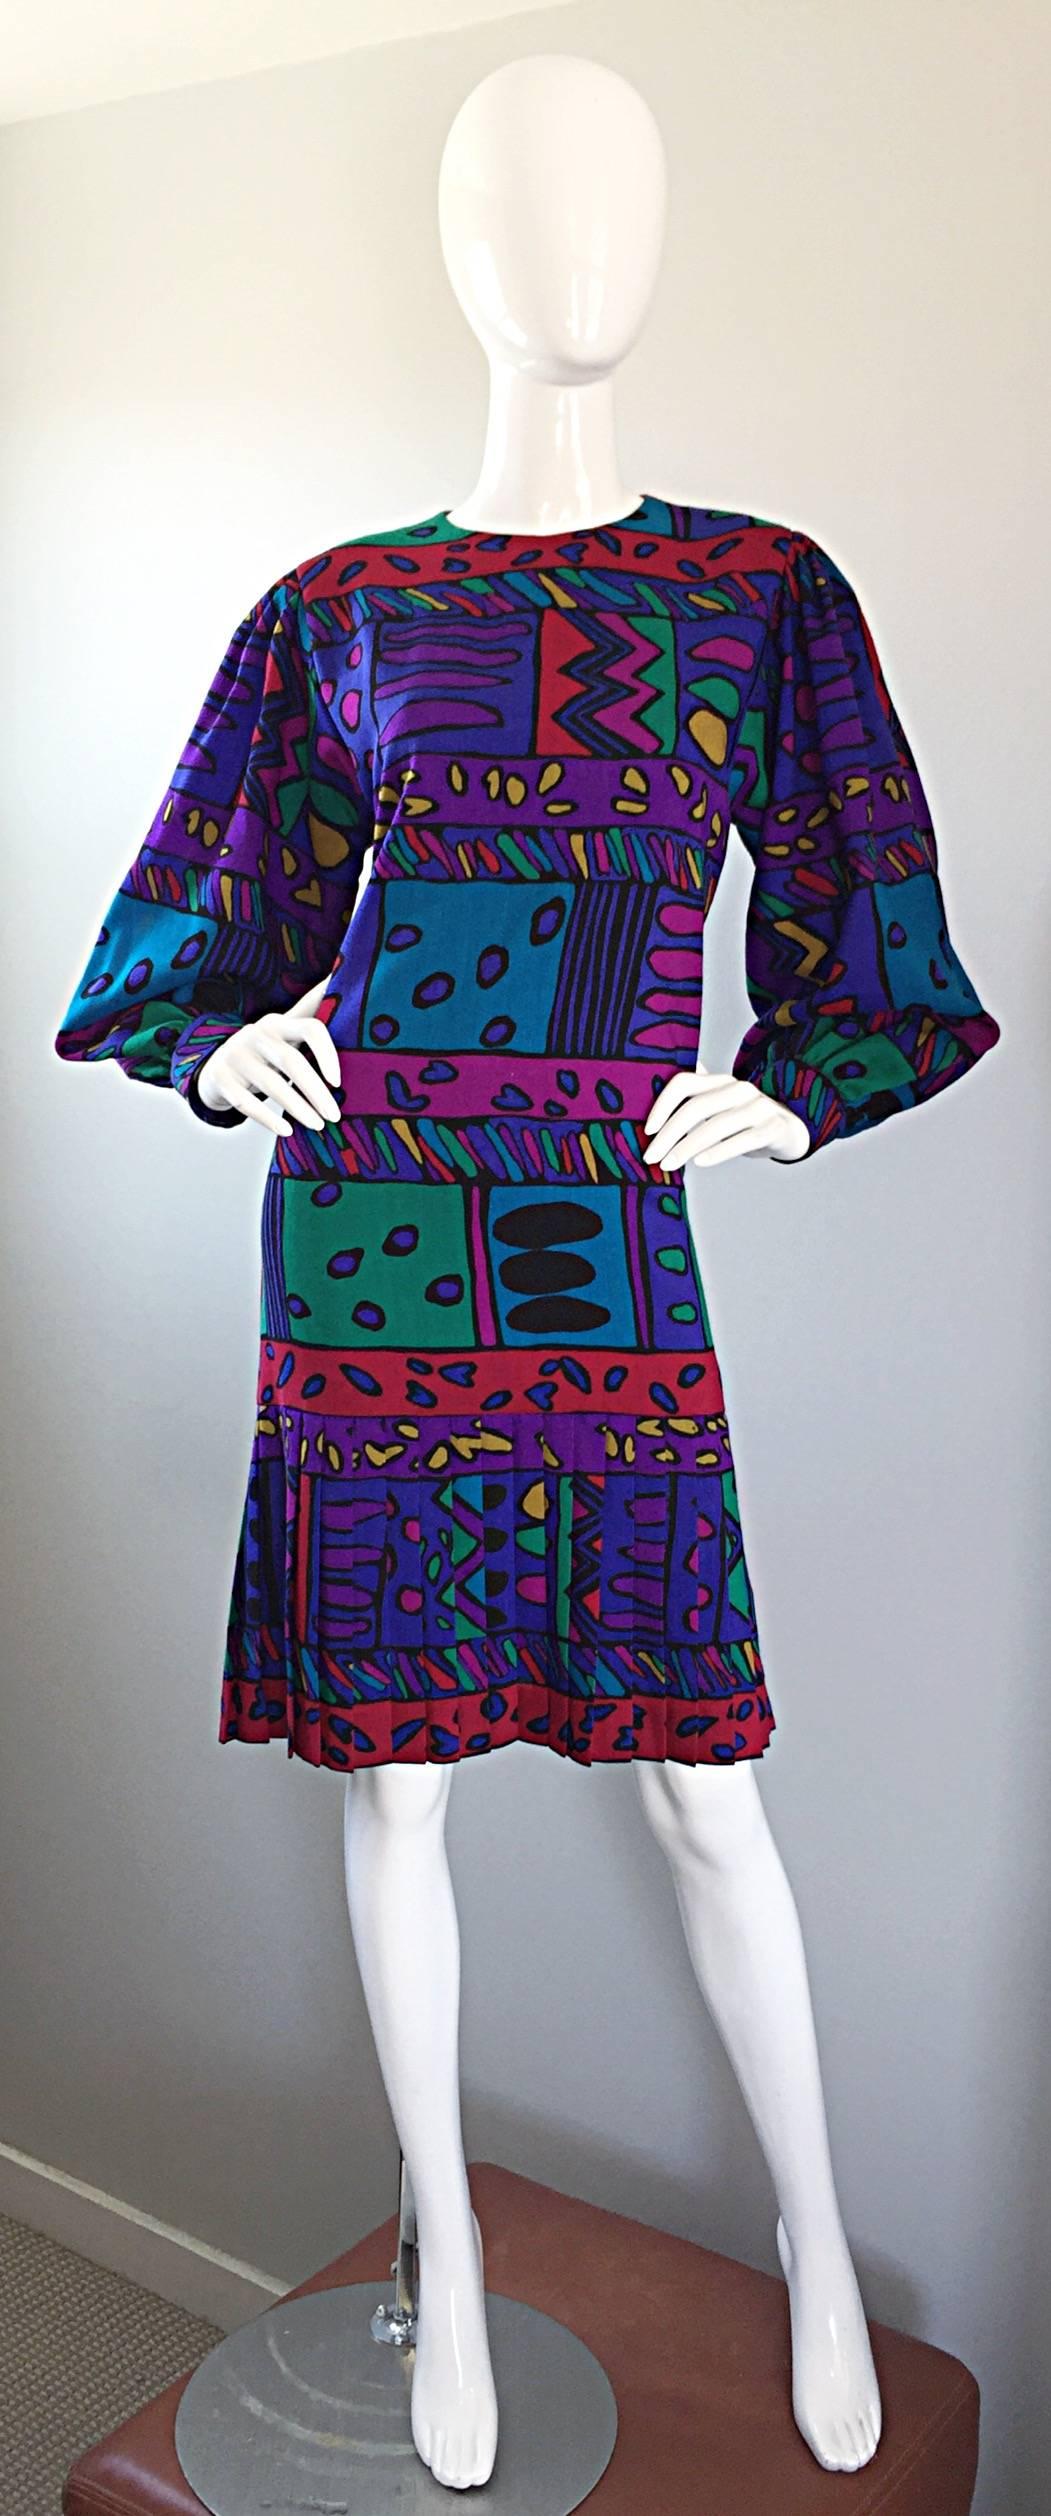 So ein lustiges, buntes Op-Art-Kleid von HELGA HOWIE! Weiche Baumwolle mit leuchtenden Farben in Lila, Blau, Pink, Fuchsia, Grün, Rot, Gelb und Orange! Herzen in verschiedenen Formen und Größen sind aufgedruckt. Schmeichelhafte, fallende Taille, mit